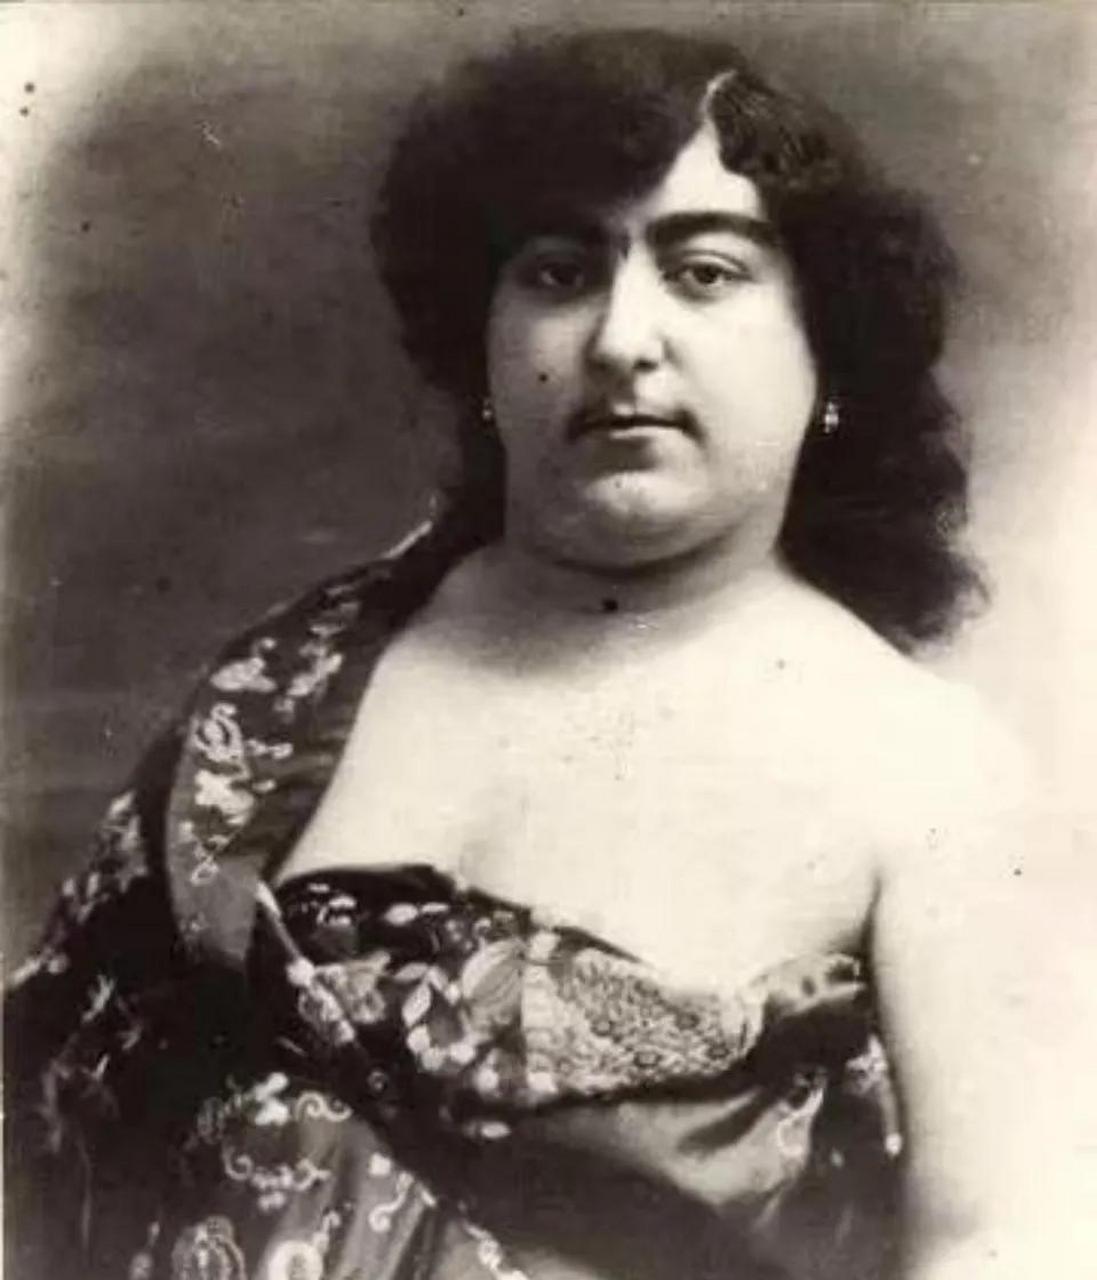 卡扎尔公主,在1900年代初被认为是波斯美丽的终极象征